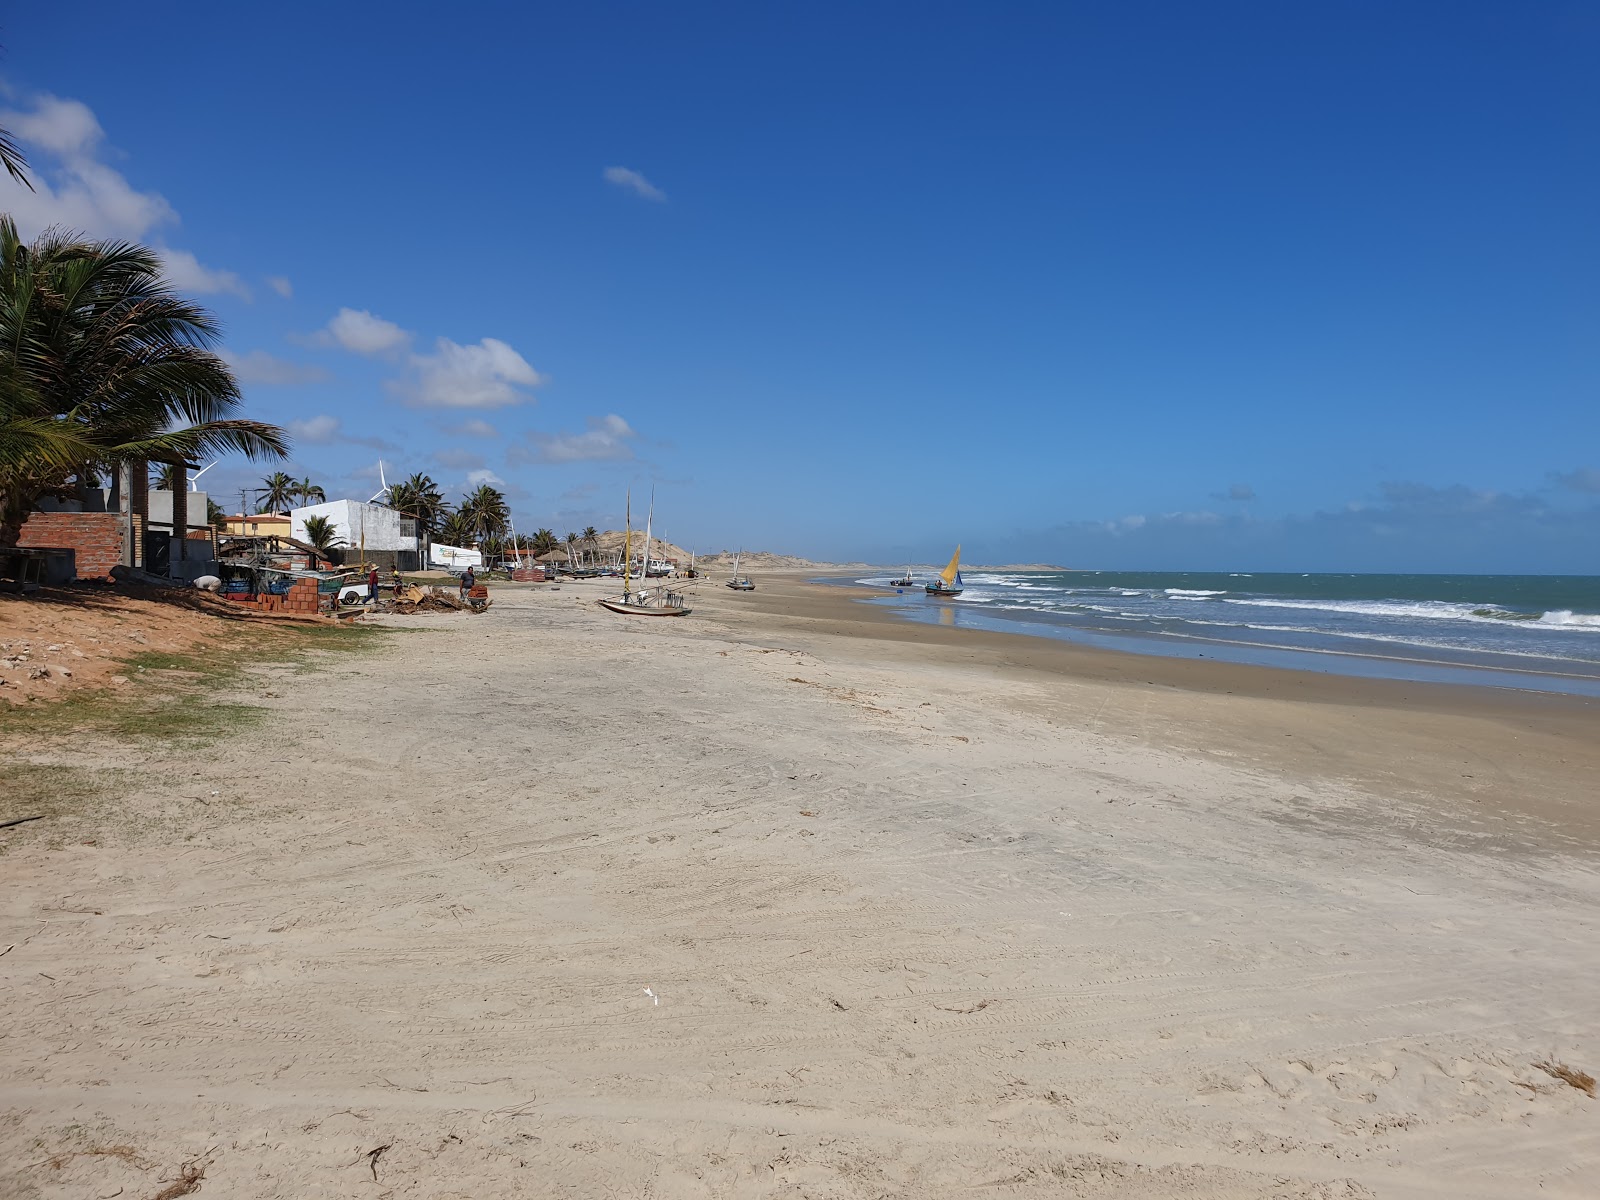 Praia de Embuaca'in fotoğrafı - rahatlamayı sevenler arasında popüler bir yer